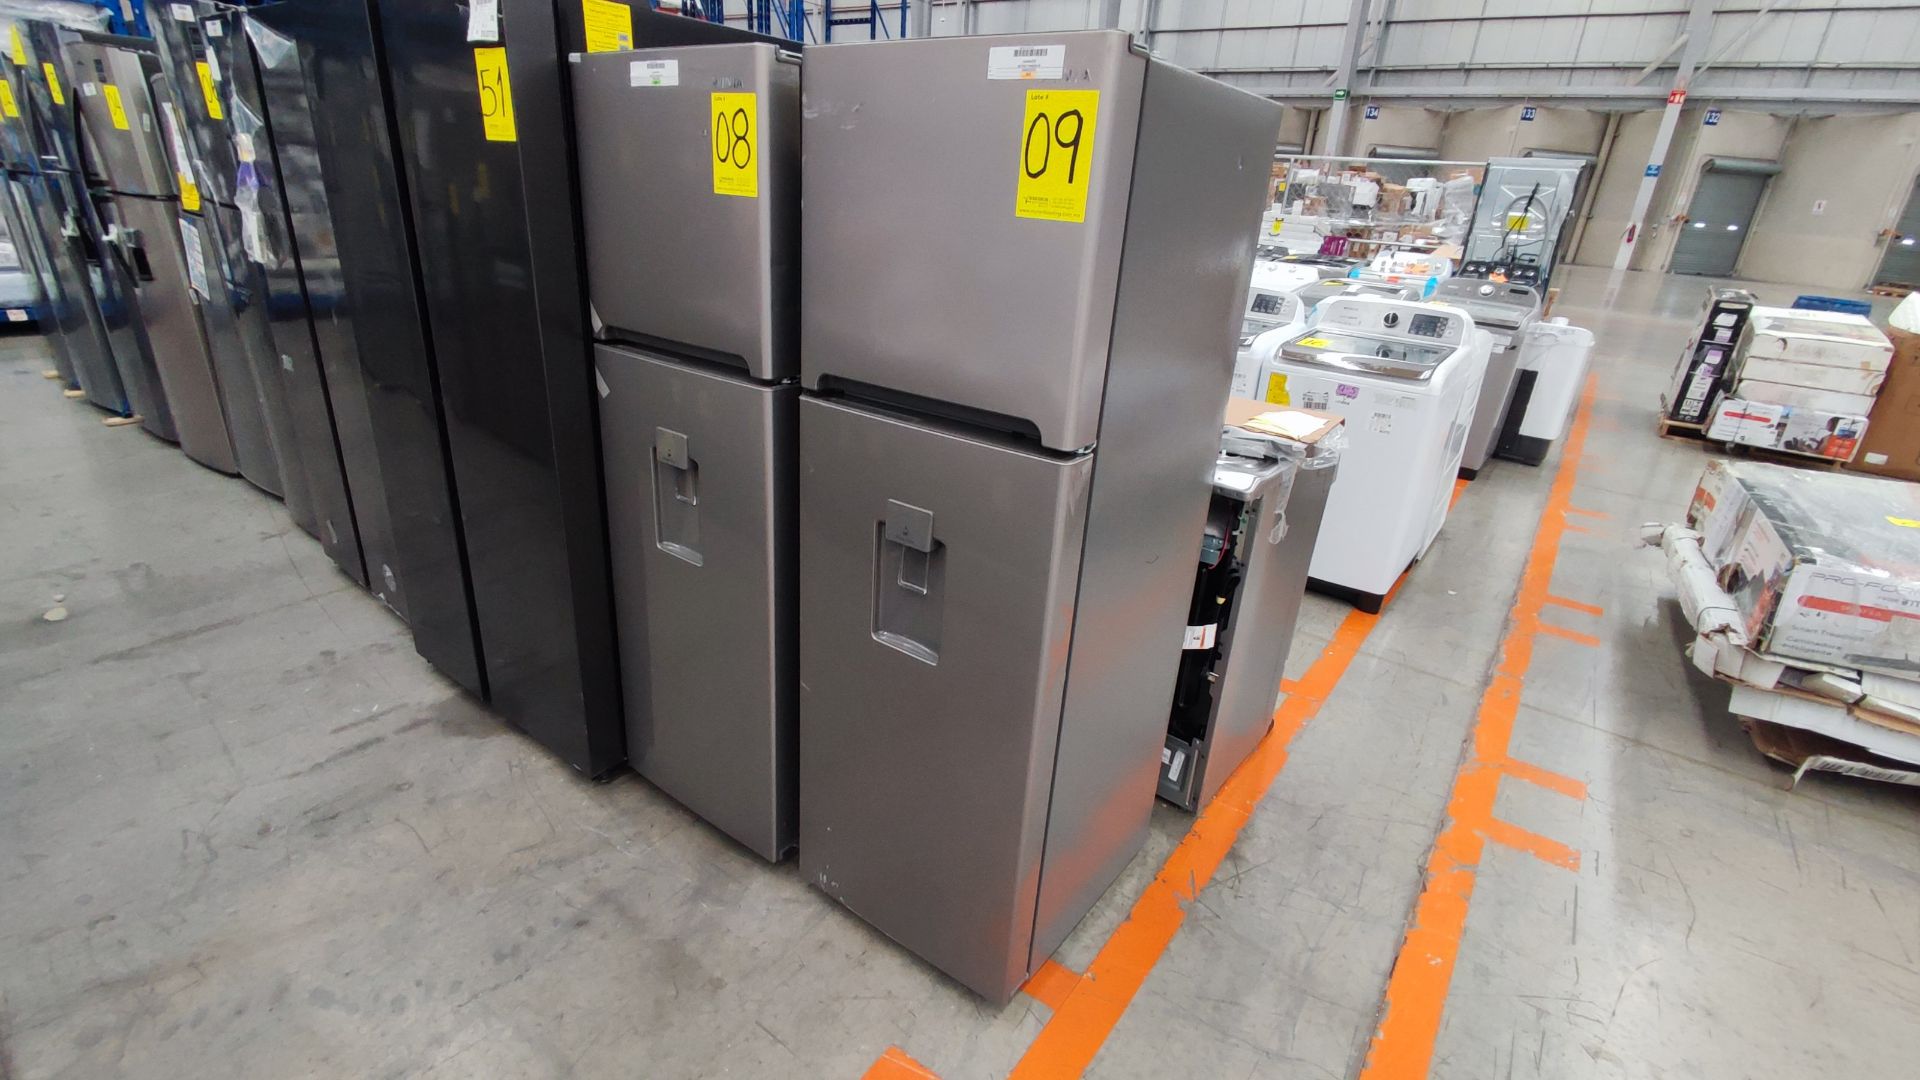 1 Refrigerador Marca Winia, Modelo DFR25210GMDX, Serie MR223N02441007, Color Gris Detalles Estético - Image 2 of 9